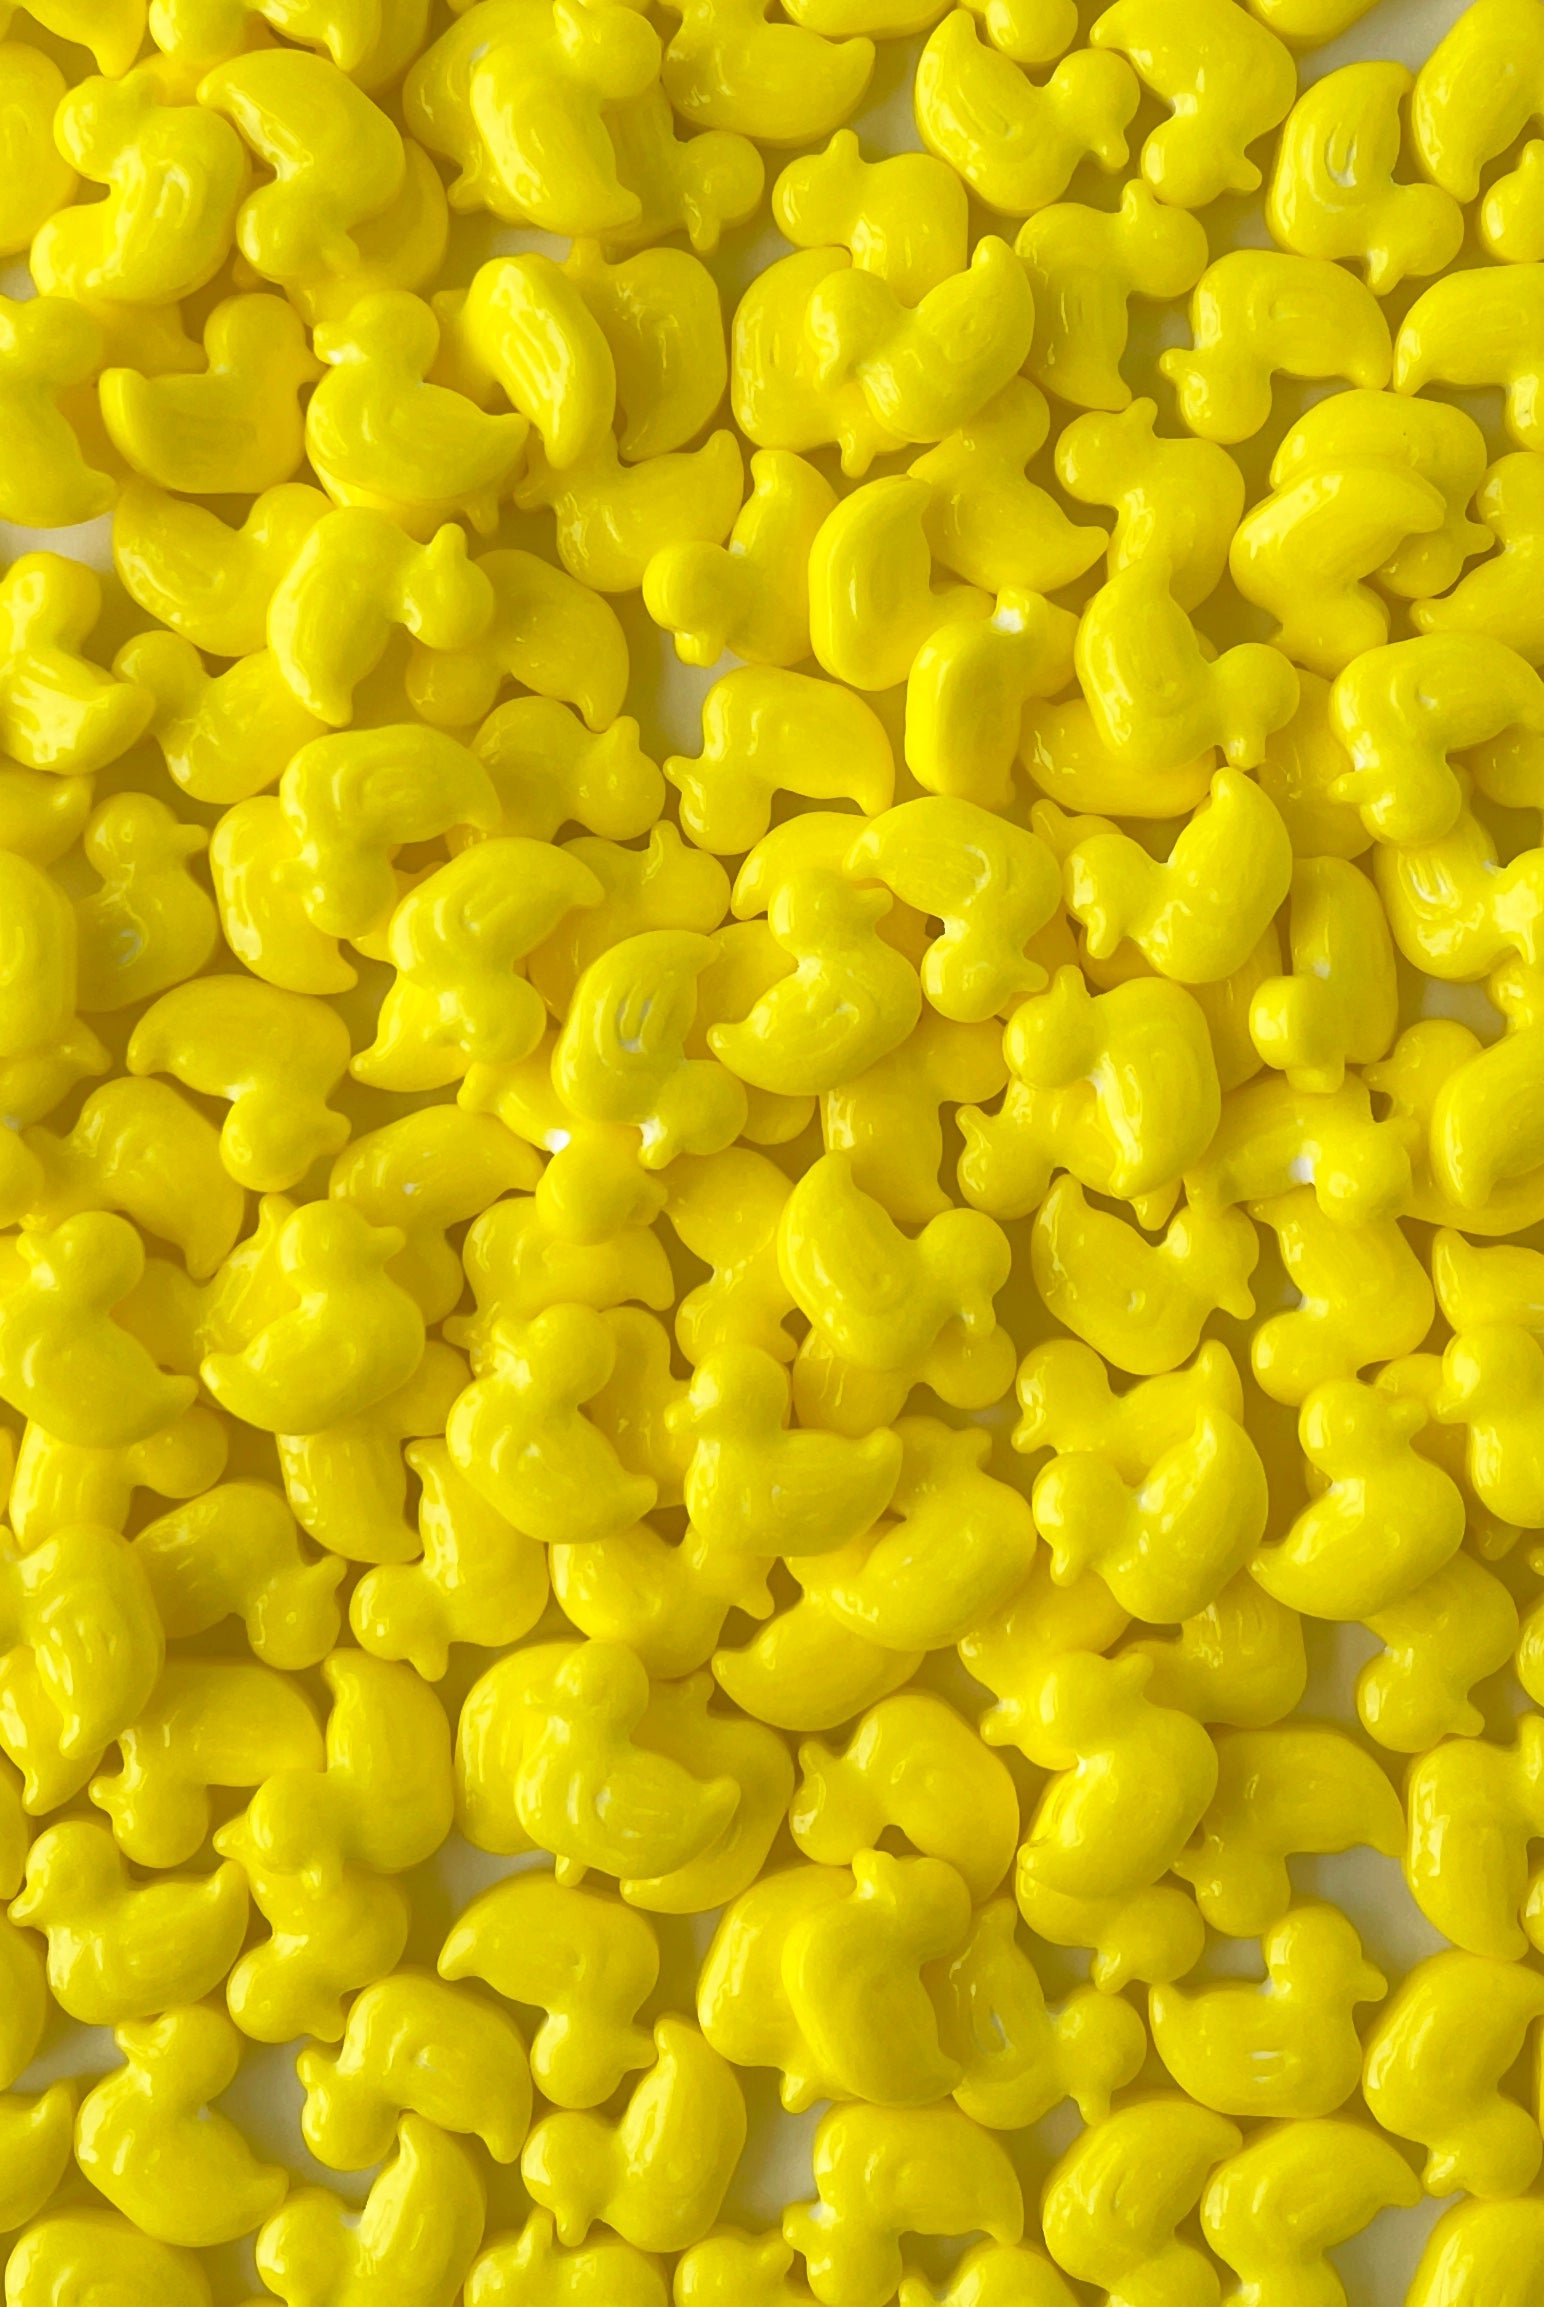 Yellow Duckies Sugar Shapes - US